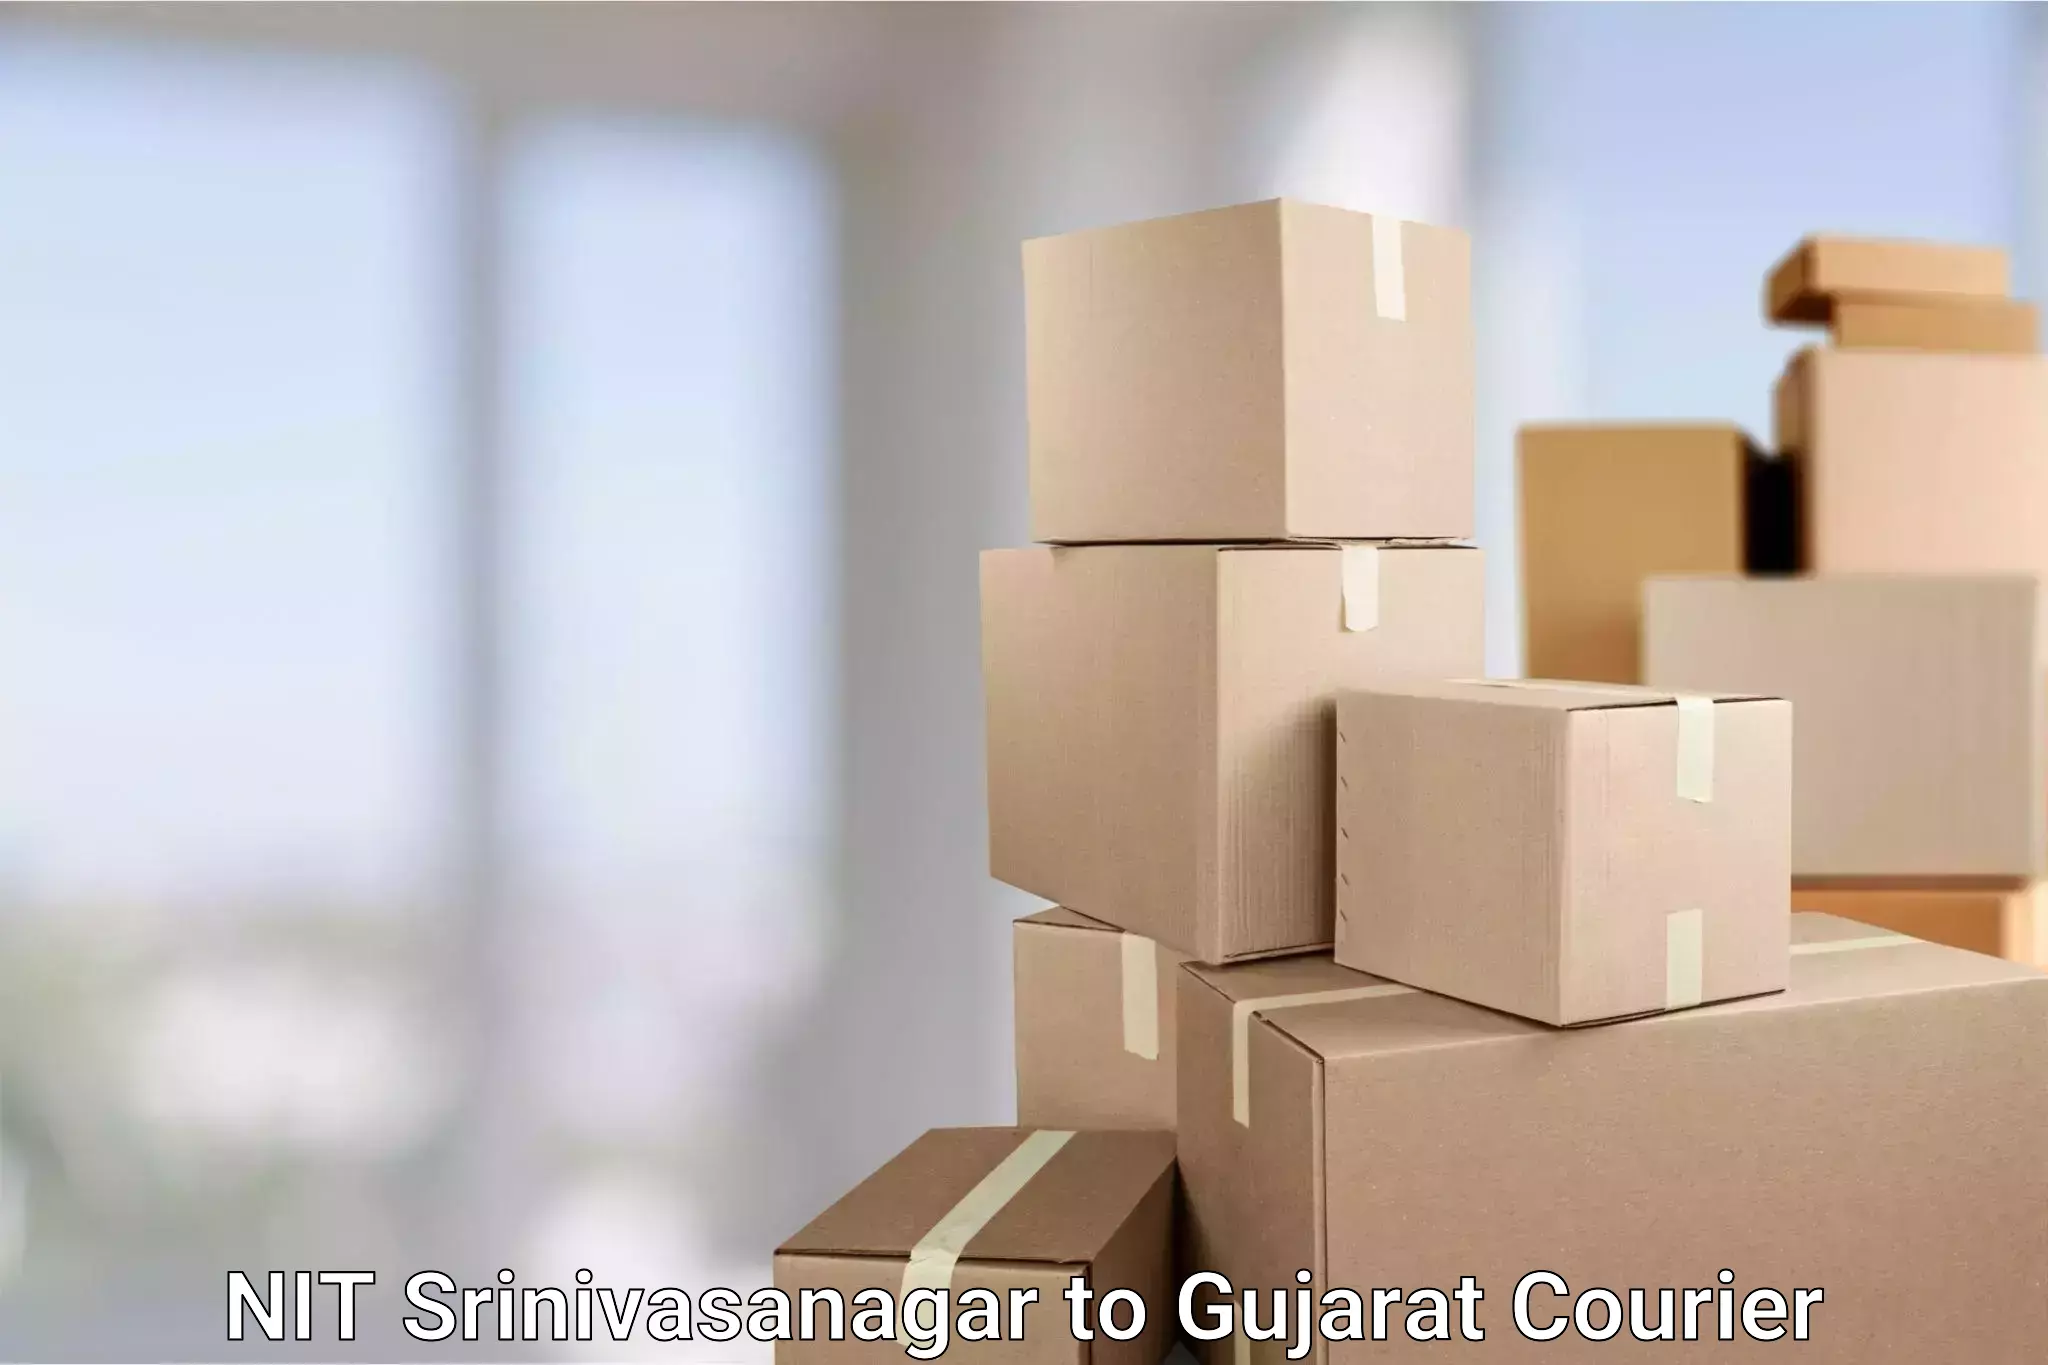 Regular parcel service in NIT Srinivasanagar to Gujarat